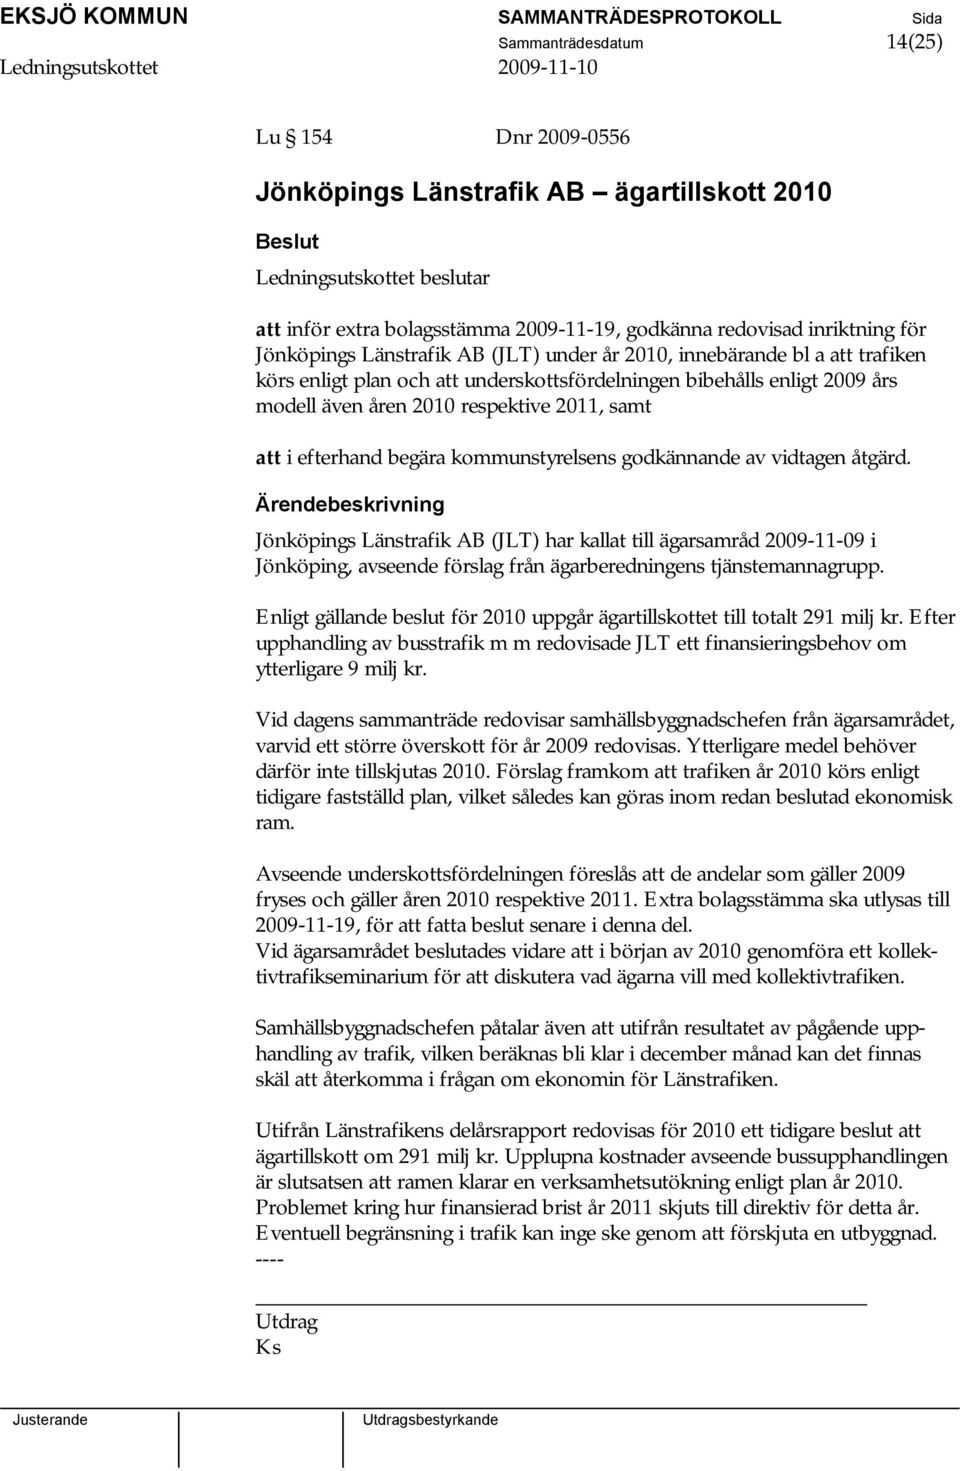 kommunstyrelsens godkännande av vidtagen åtgärd. Jönköpings Länstrafik AB (JLT) har kallat till ägarsamråd 2009-11-09 i Jönköping, avseende förslag från ägarberedningens tjänstemannagrupp.